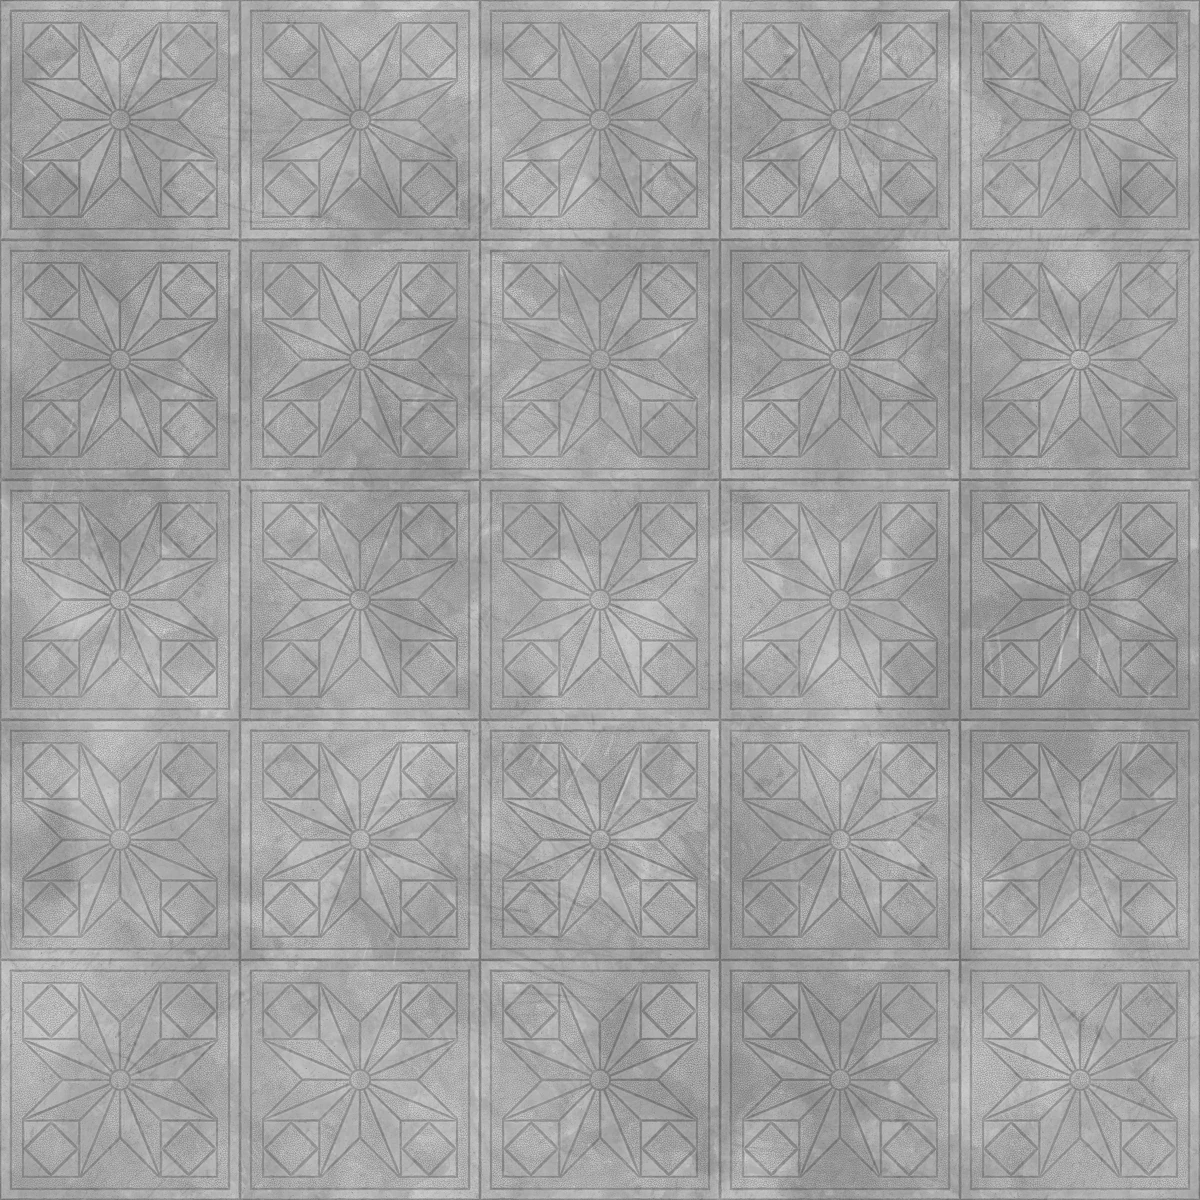 Concrete Patterned Tiles PBR Texture